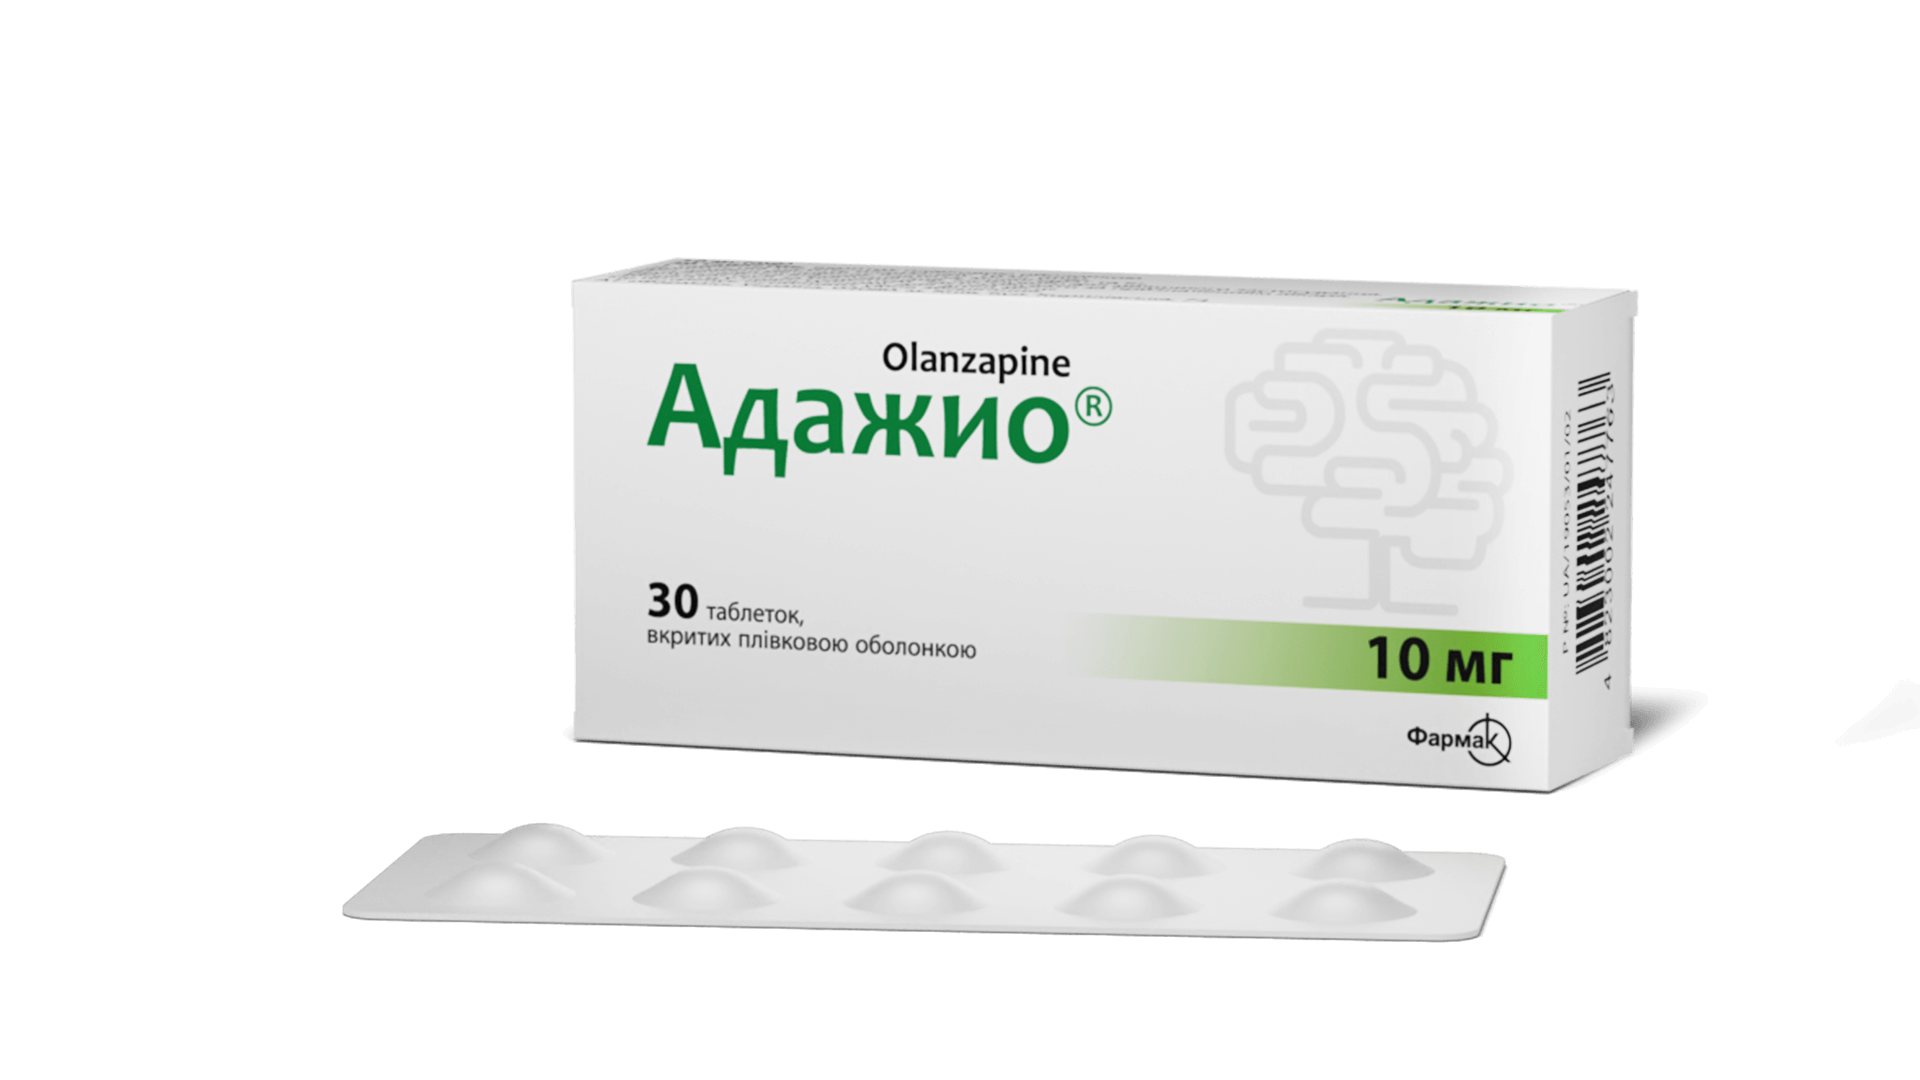 Адажио® 10 мг (3)